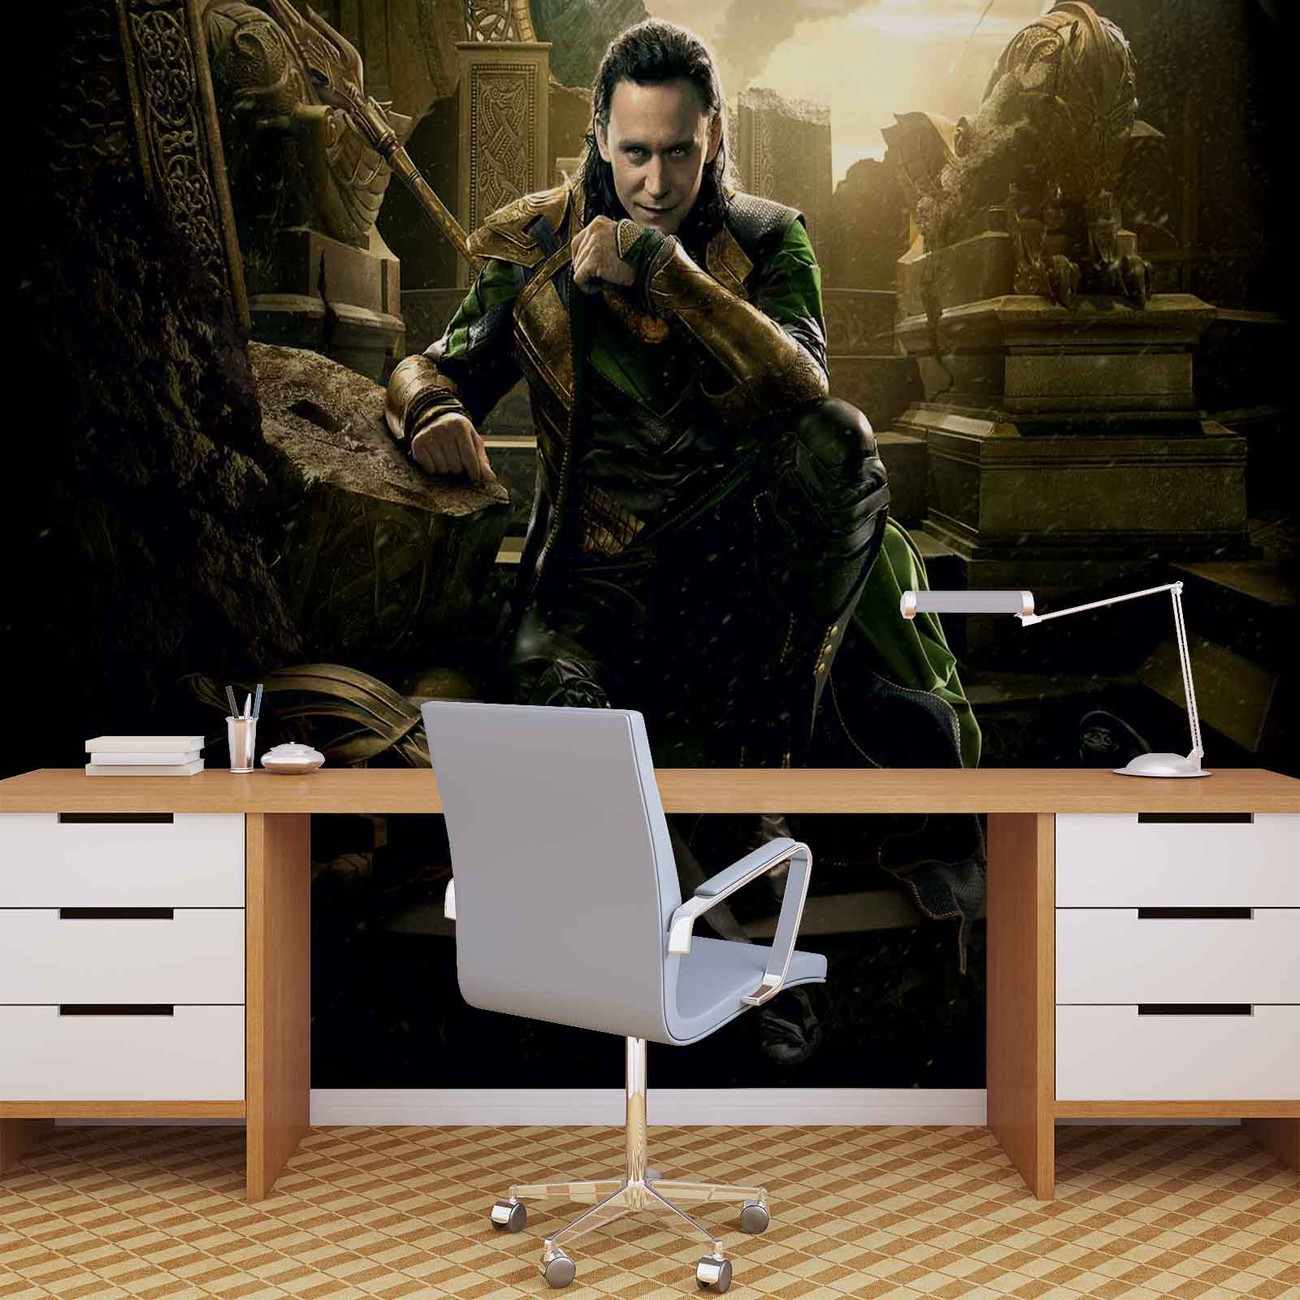 Marvel Avengers Loki Wallpaper Mural - Avengers Enemies , HD Wallpaper & Backgrounds